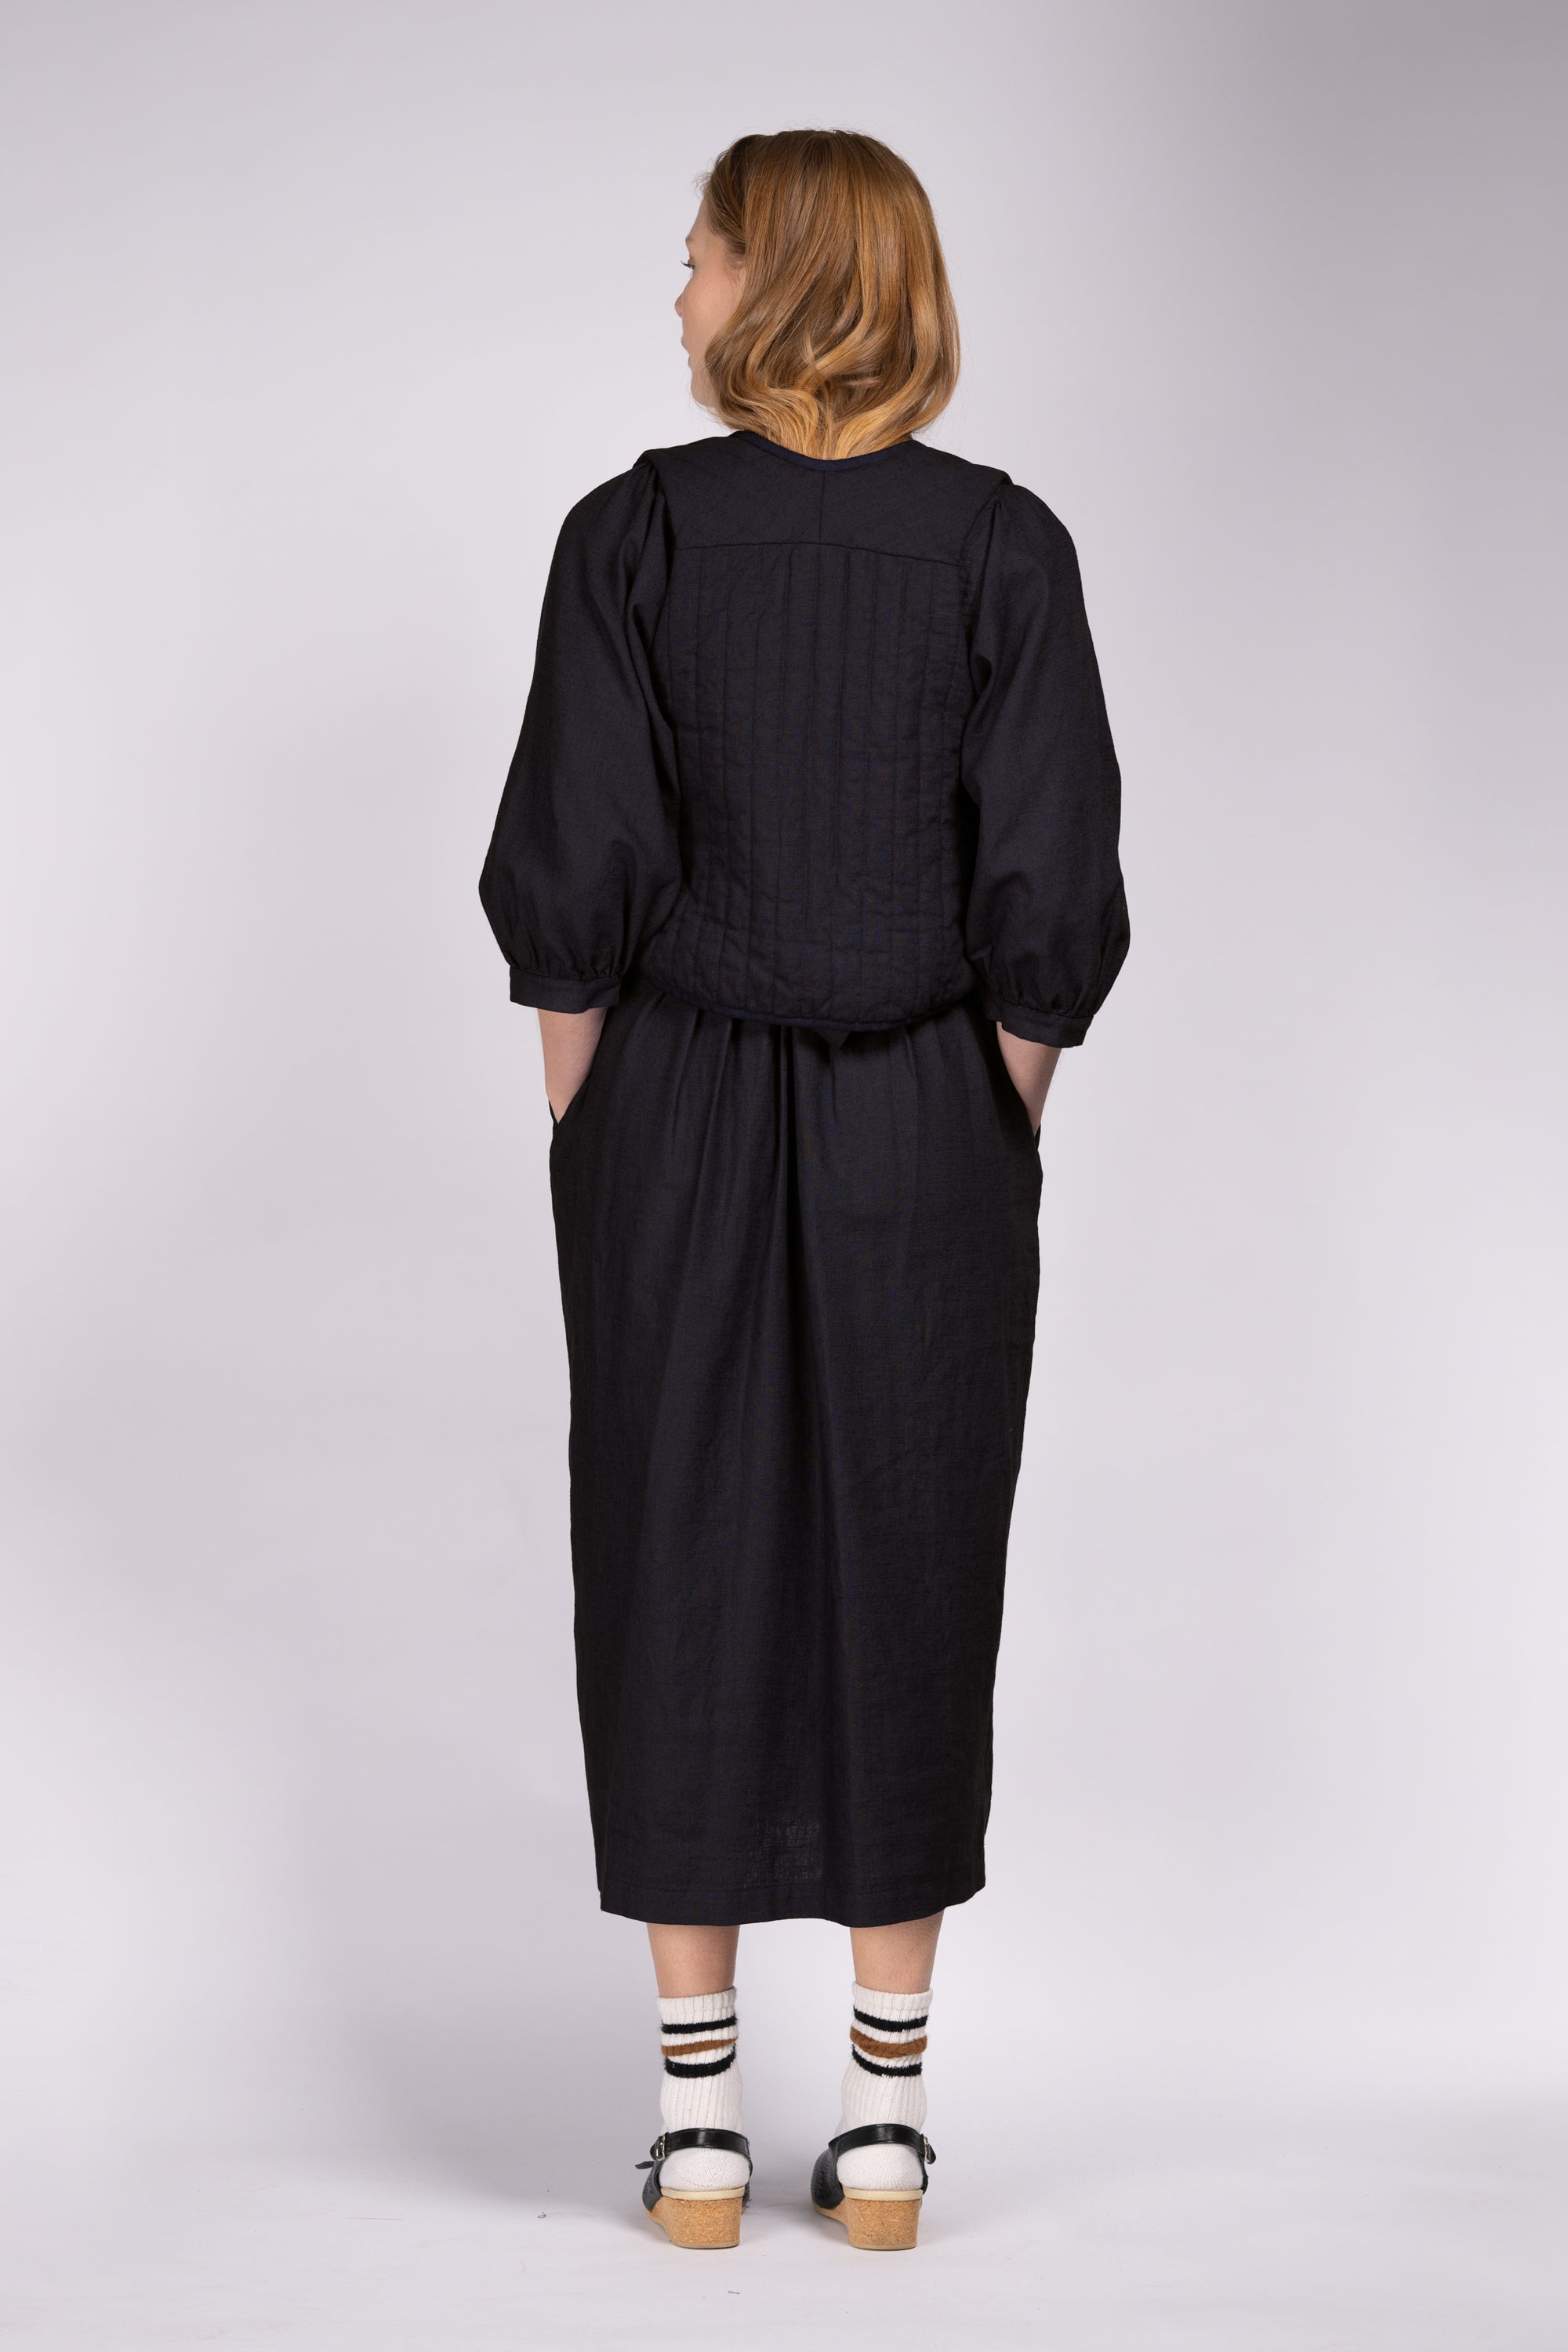 'Woodstock' Quilt Waistcoat - Black Linen